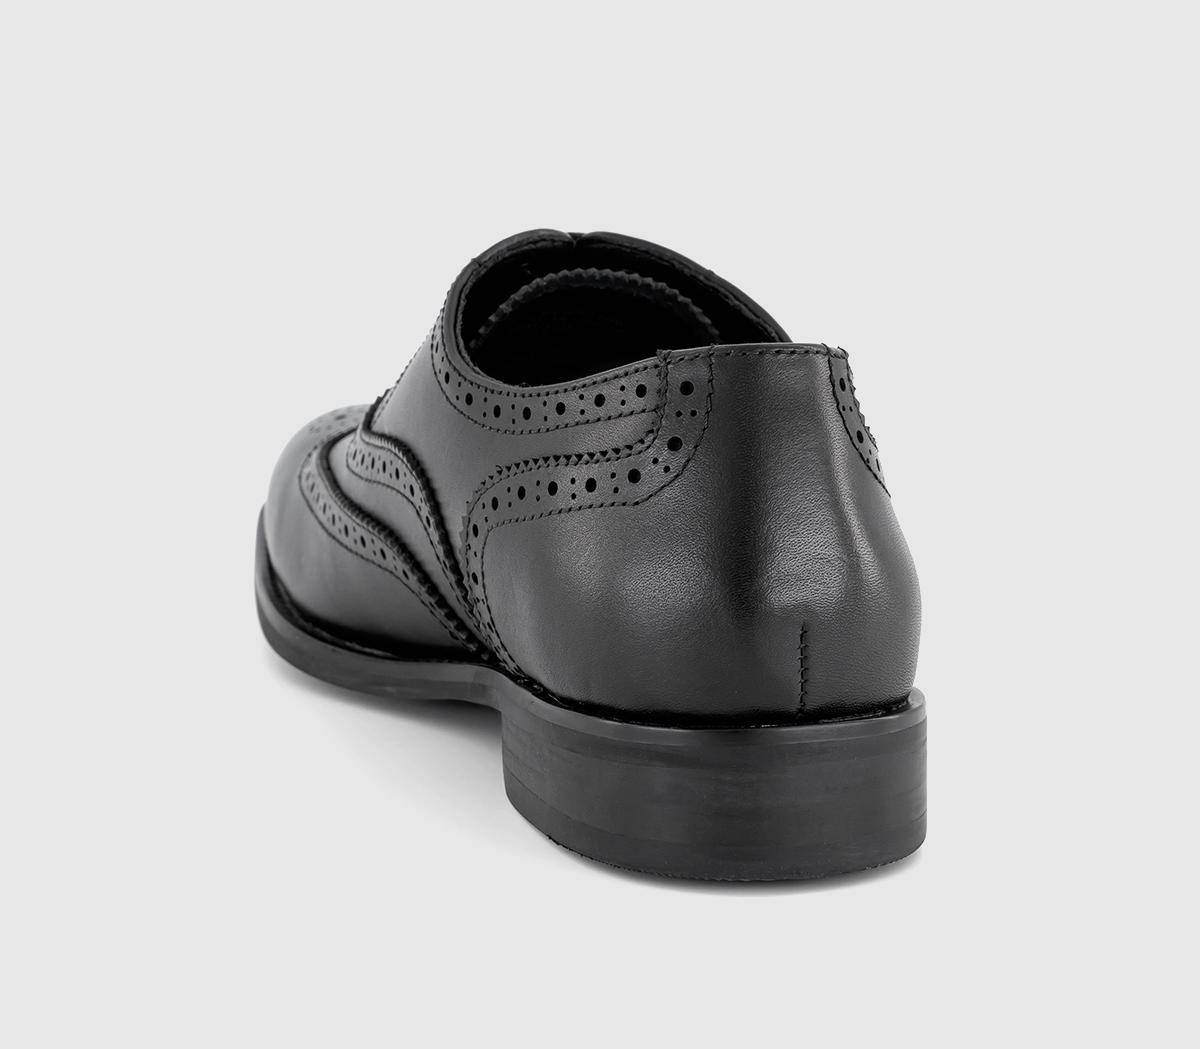 OFFICE Milton Oxford Brogue Shoes Black Leather - Men’s Smart Shoes